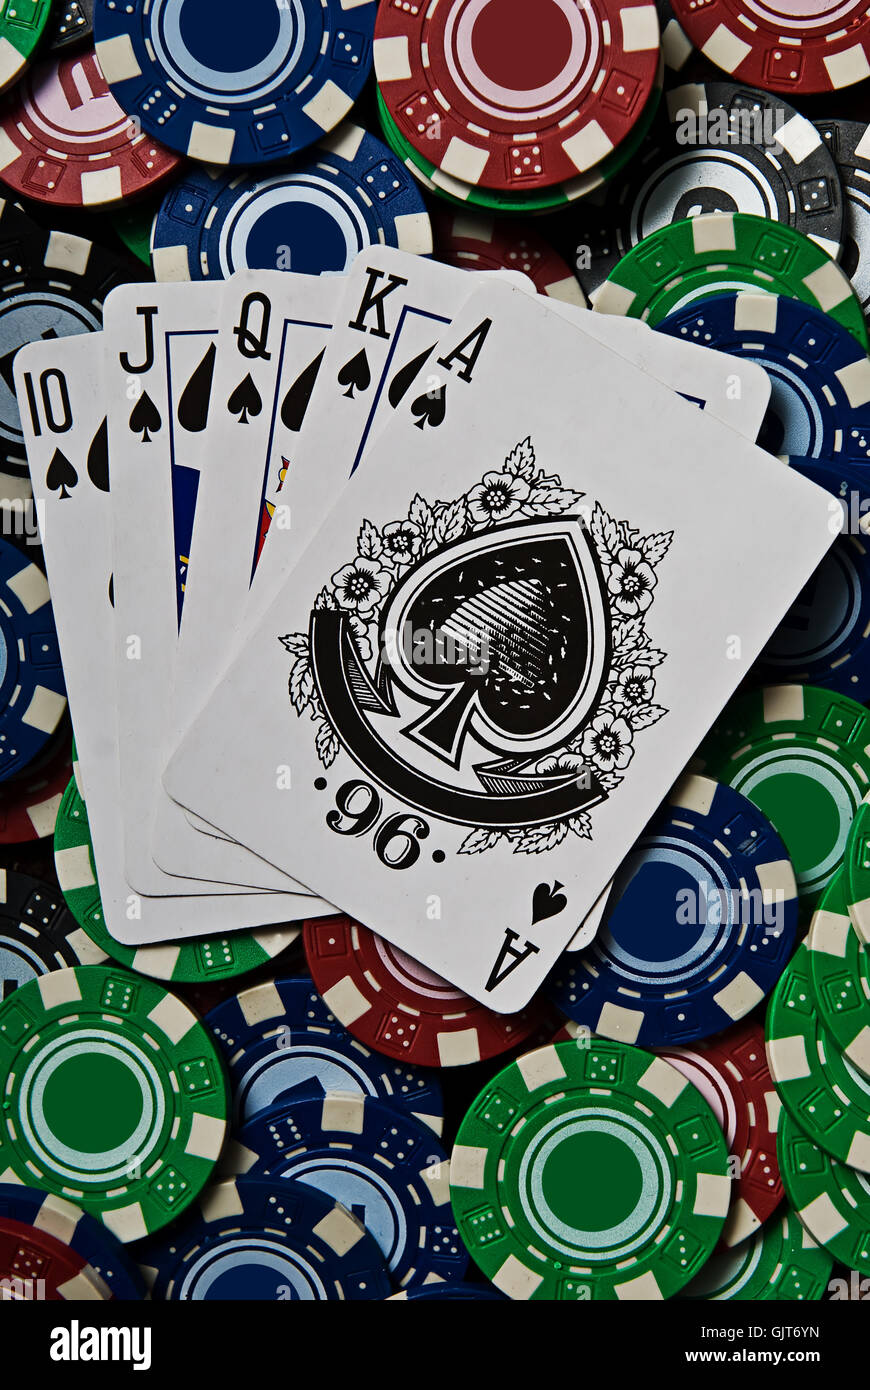 casino game of chance gambling Stock Photo